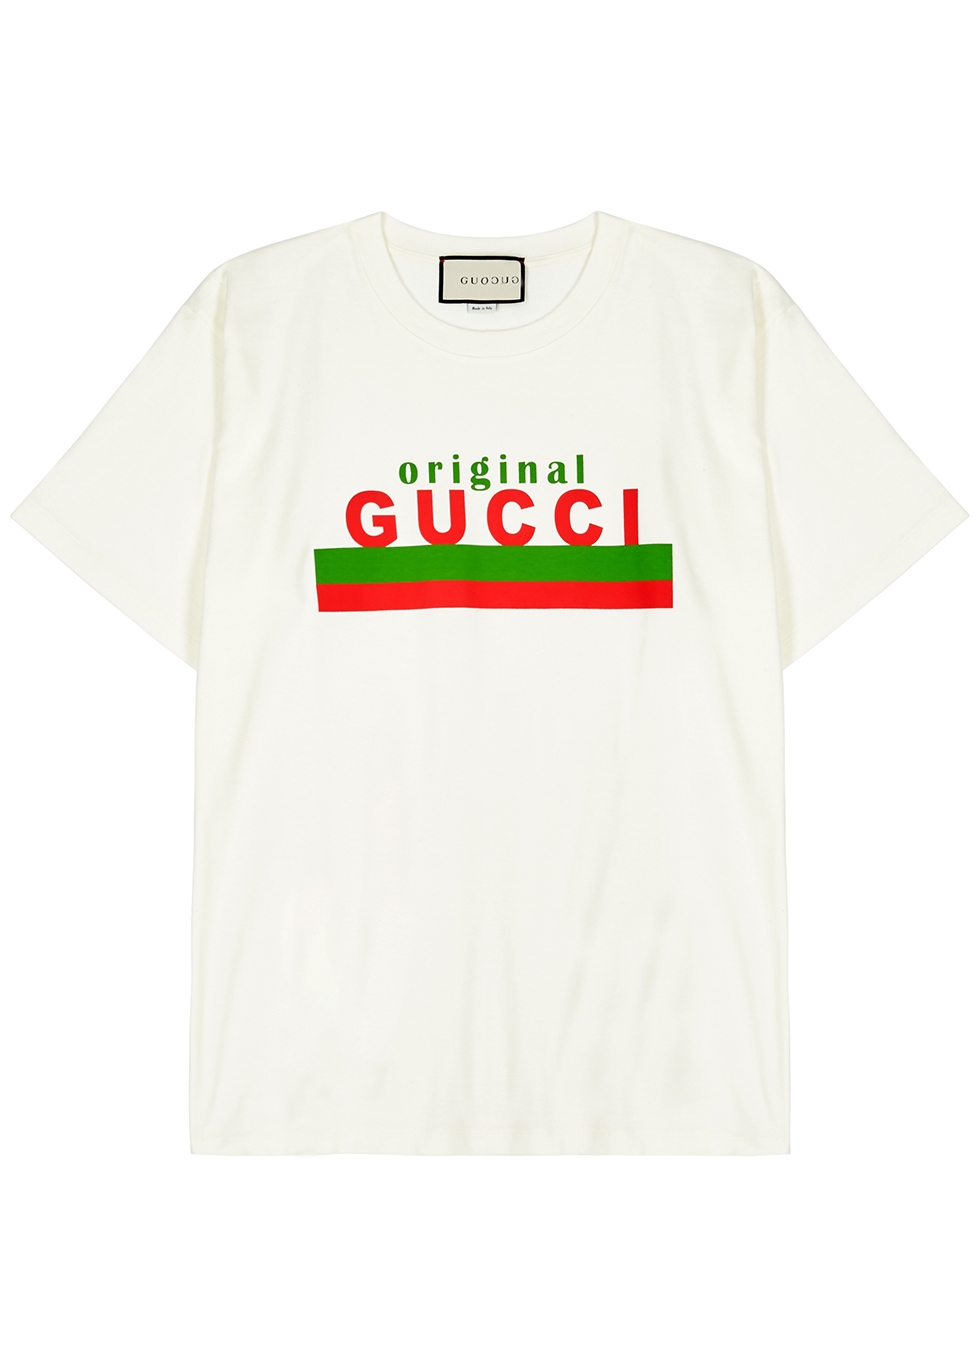 Gucci Original Gucci off-white cotton T 